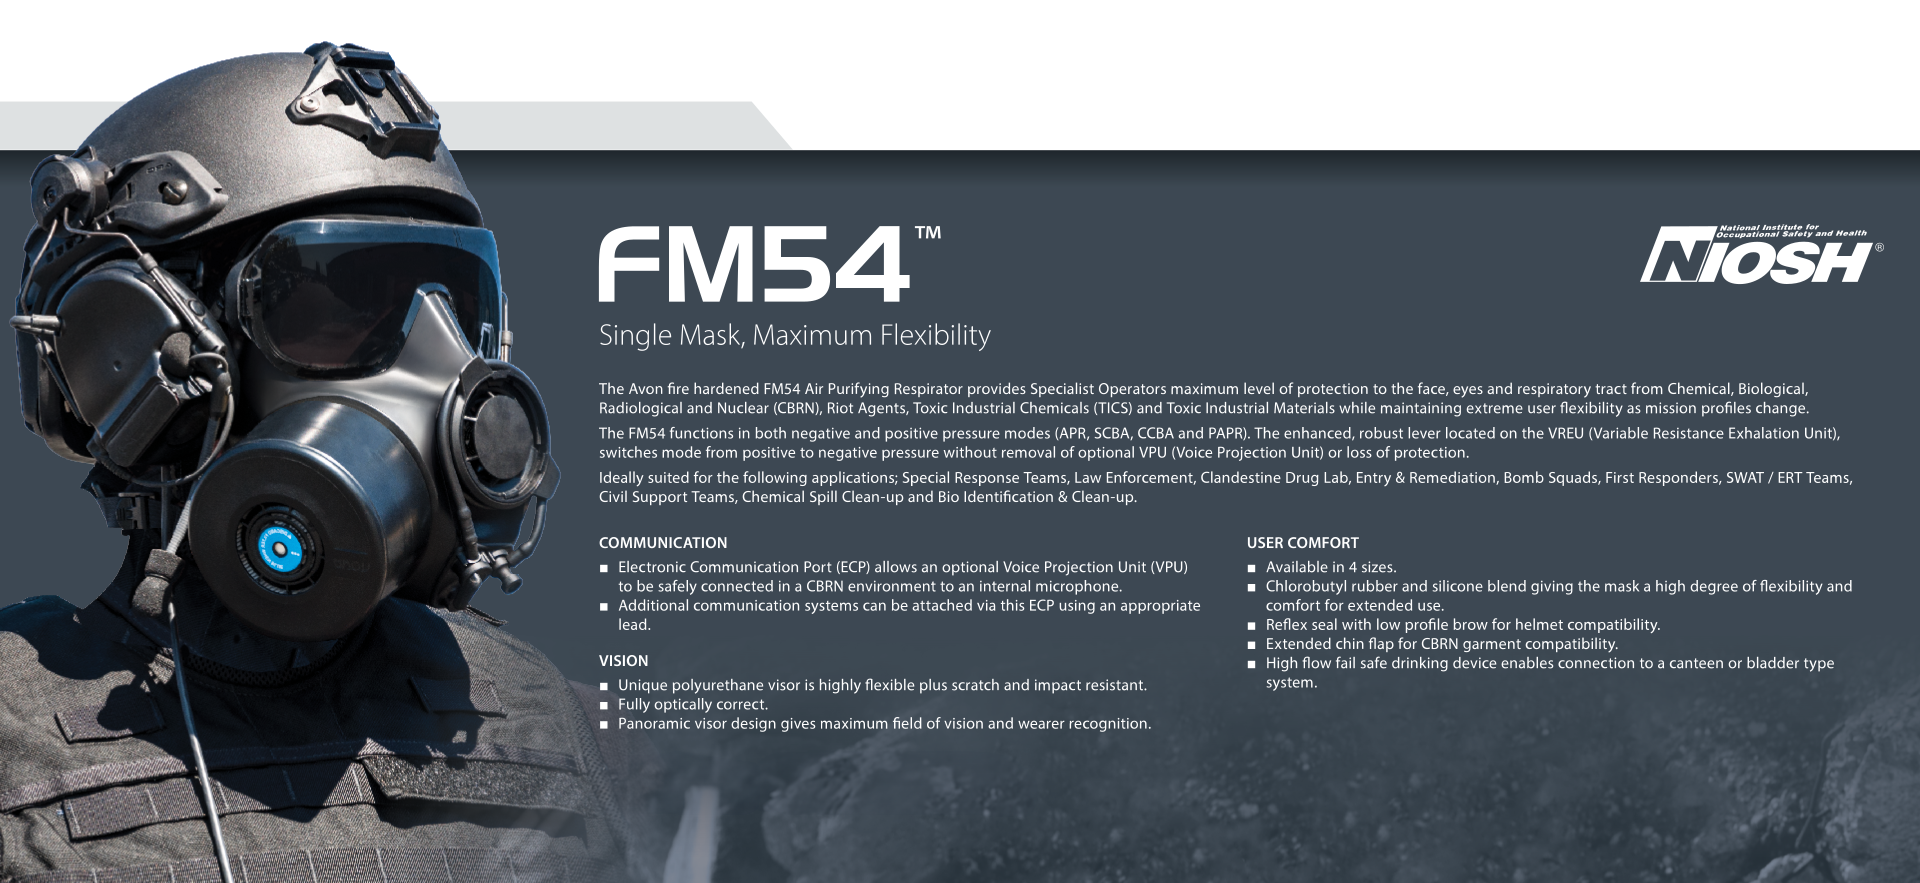 Fm54 Features